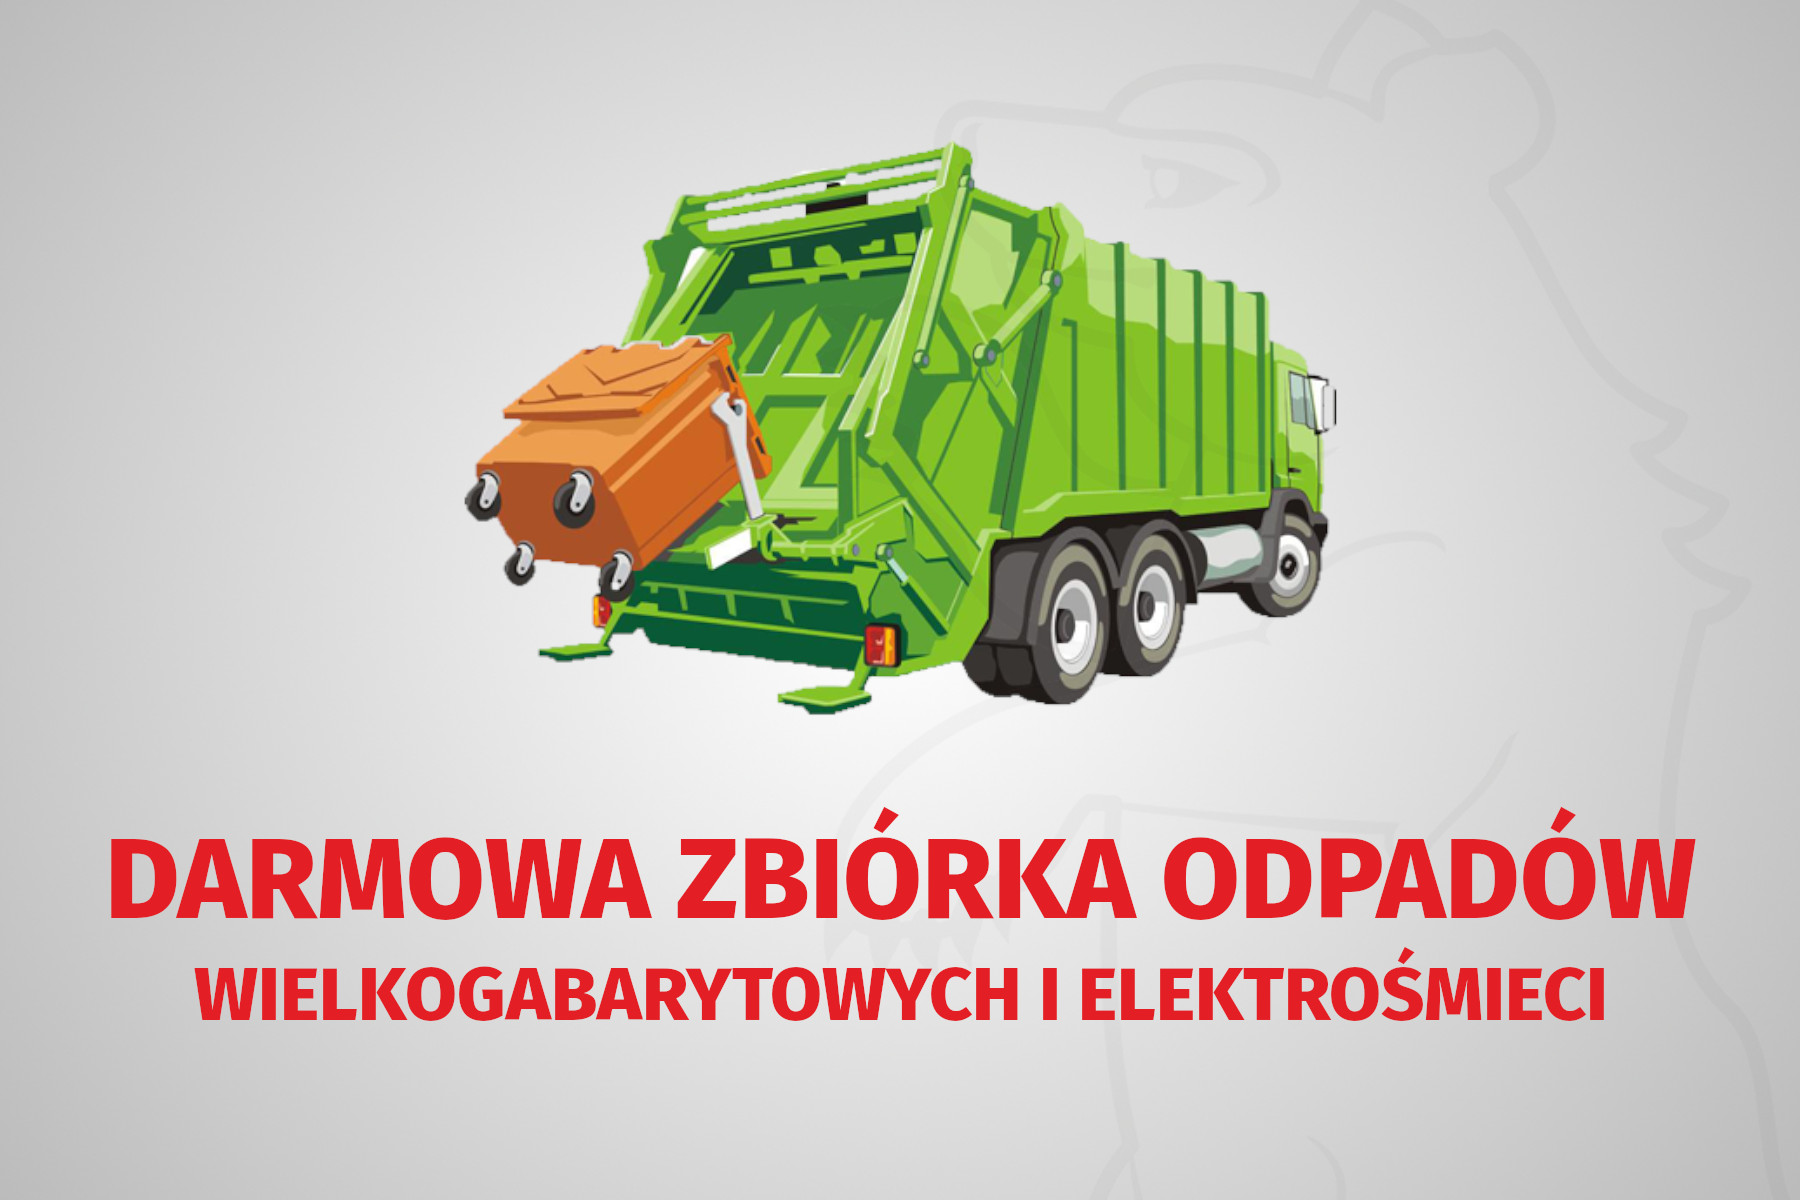 Darmowa zbiórka odpadów wielkogabarytowych i elektrośmieci